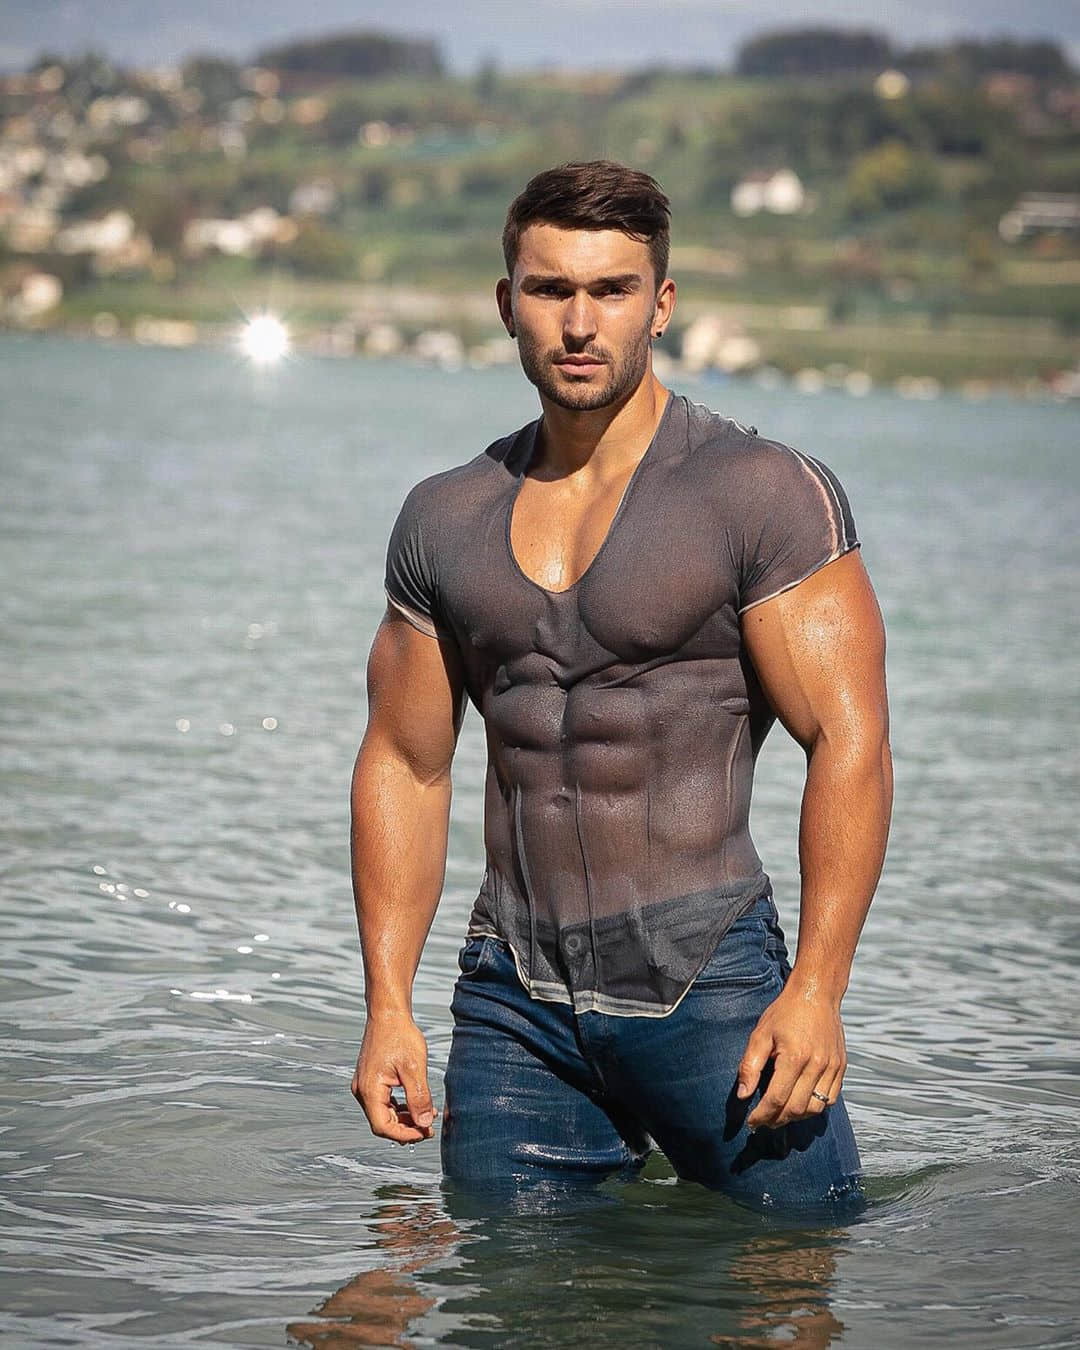 周一赏肌肉｜肌肉炸开衬衫的性感欧洲帅哥：Manuel Guyer -2